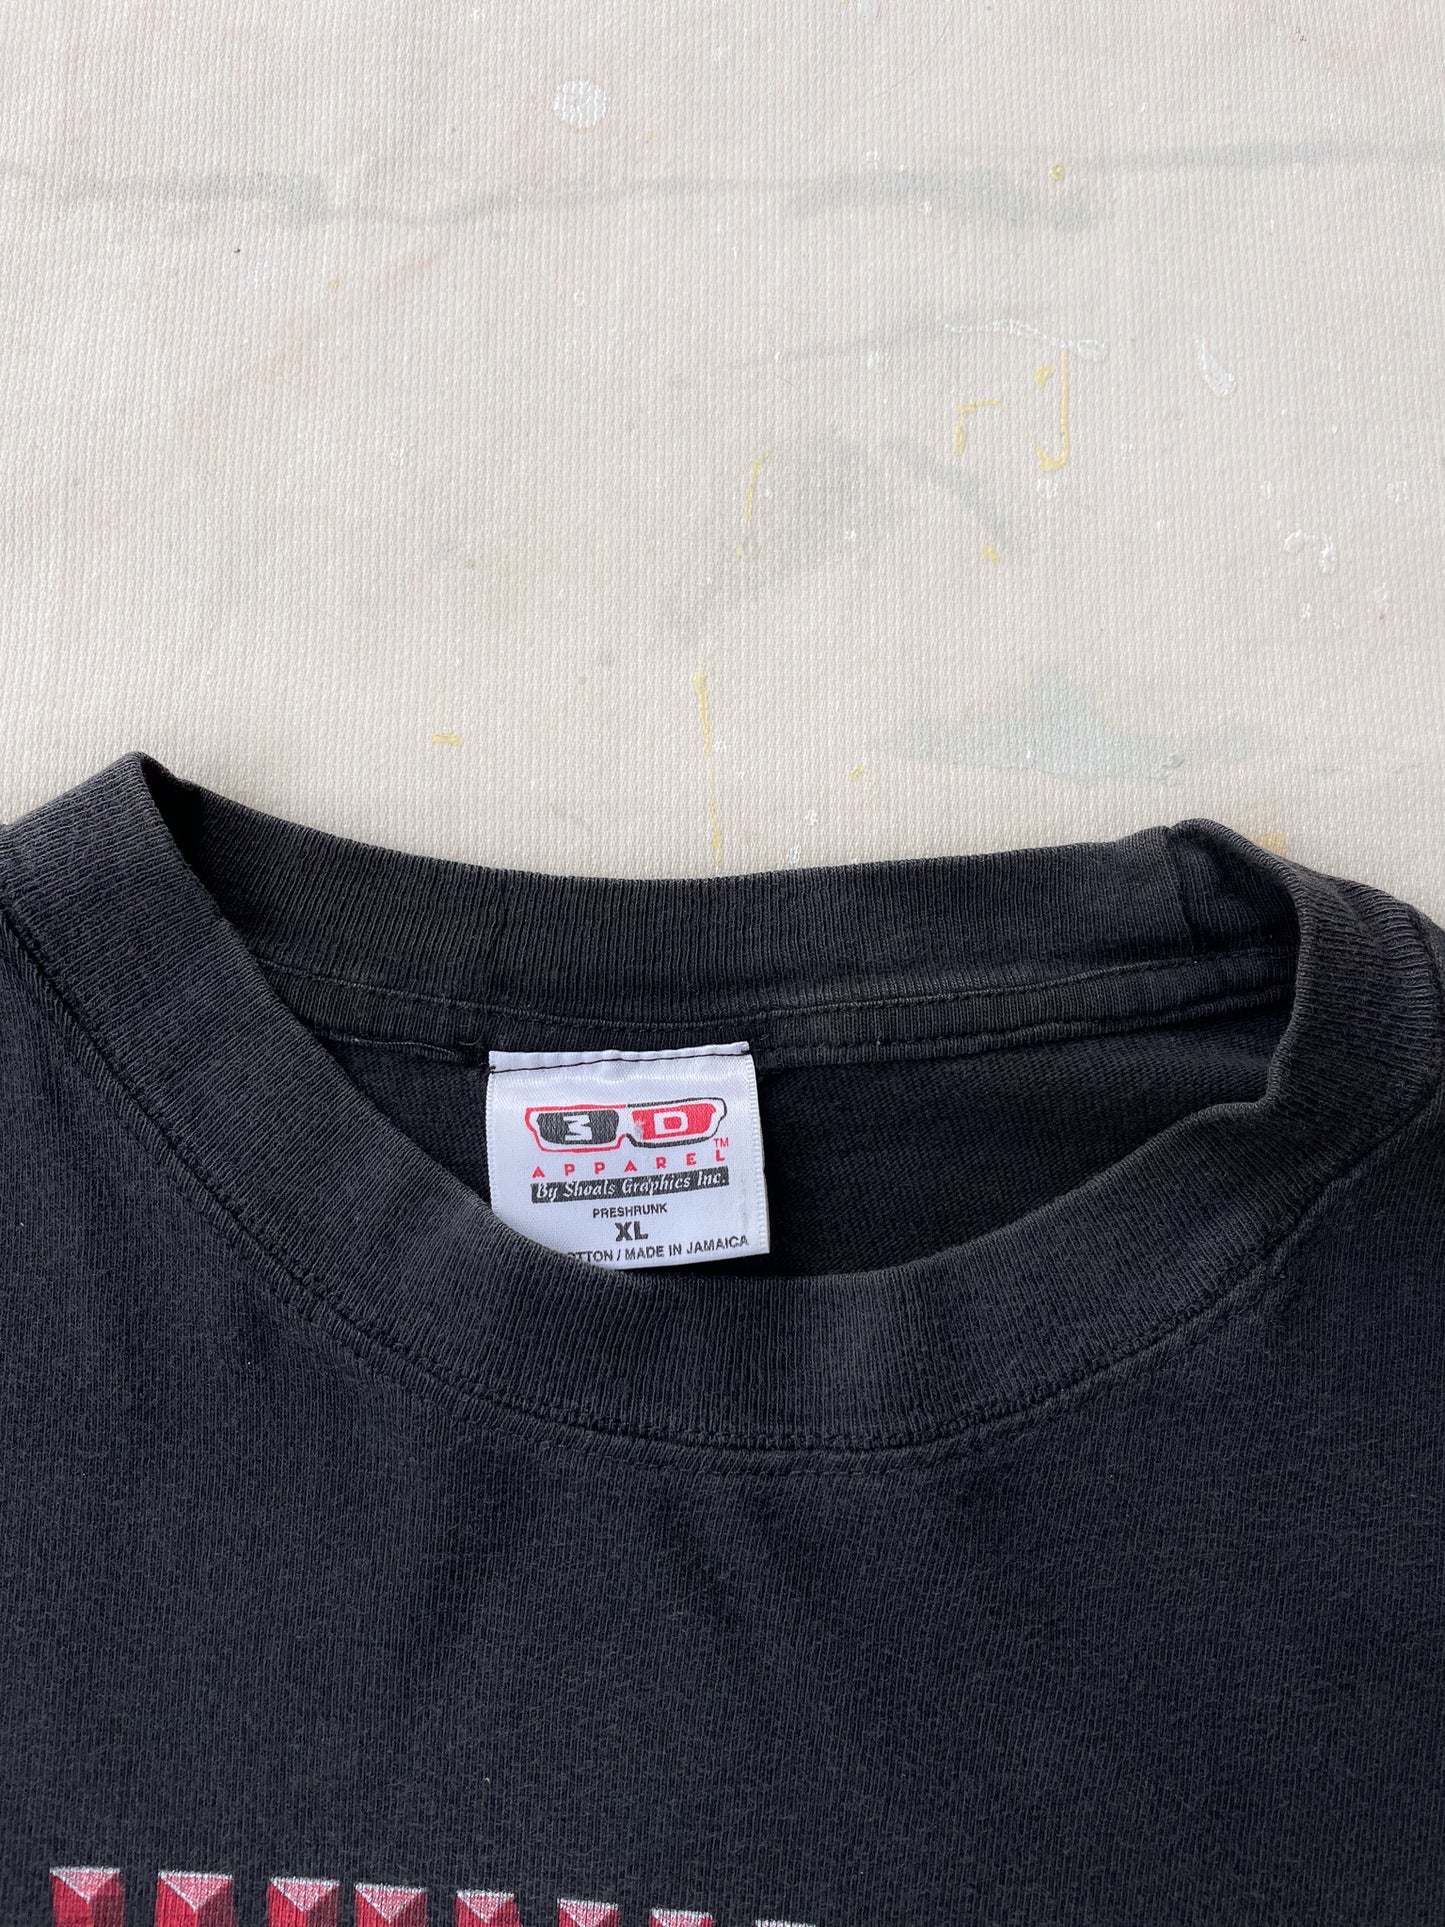 Ford Racing T-Shirt—[XL]